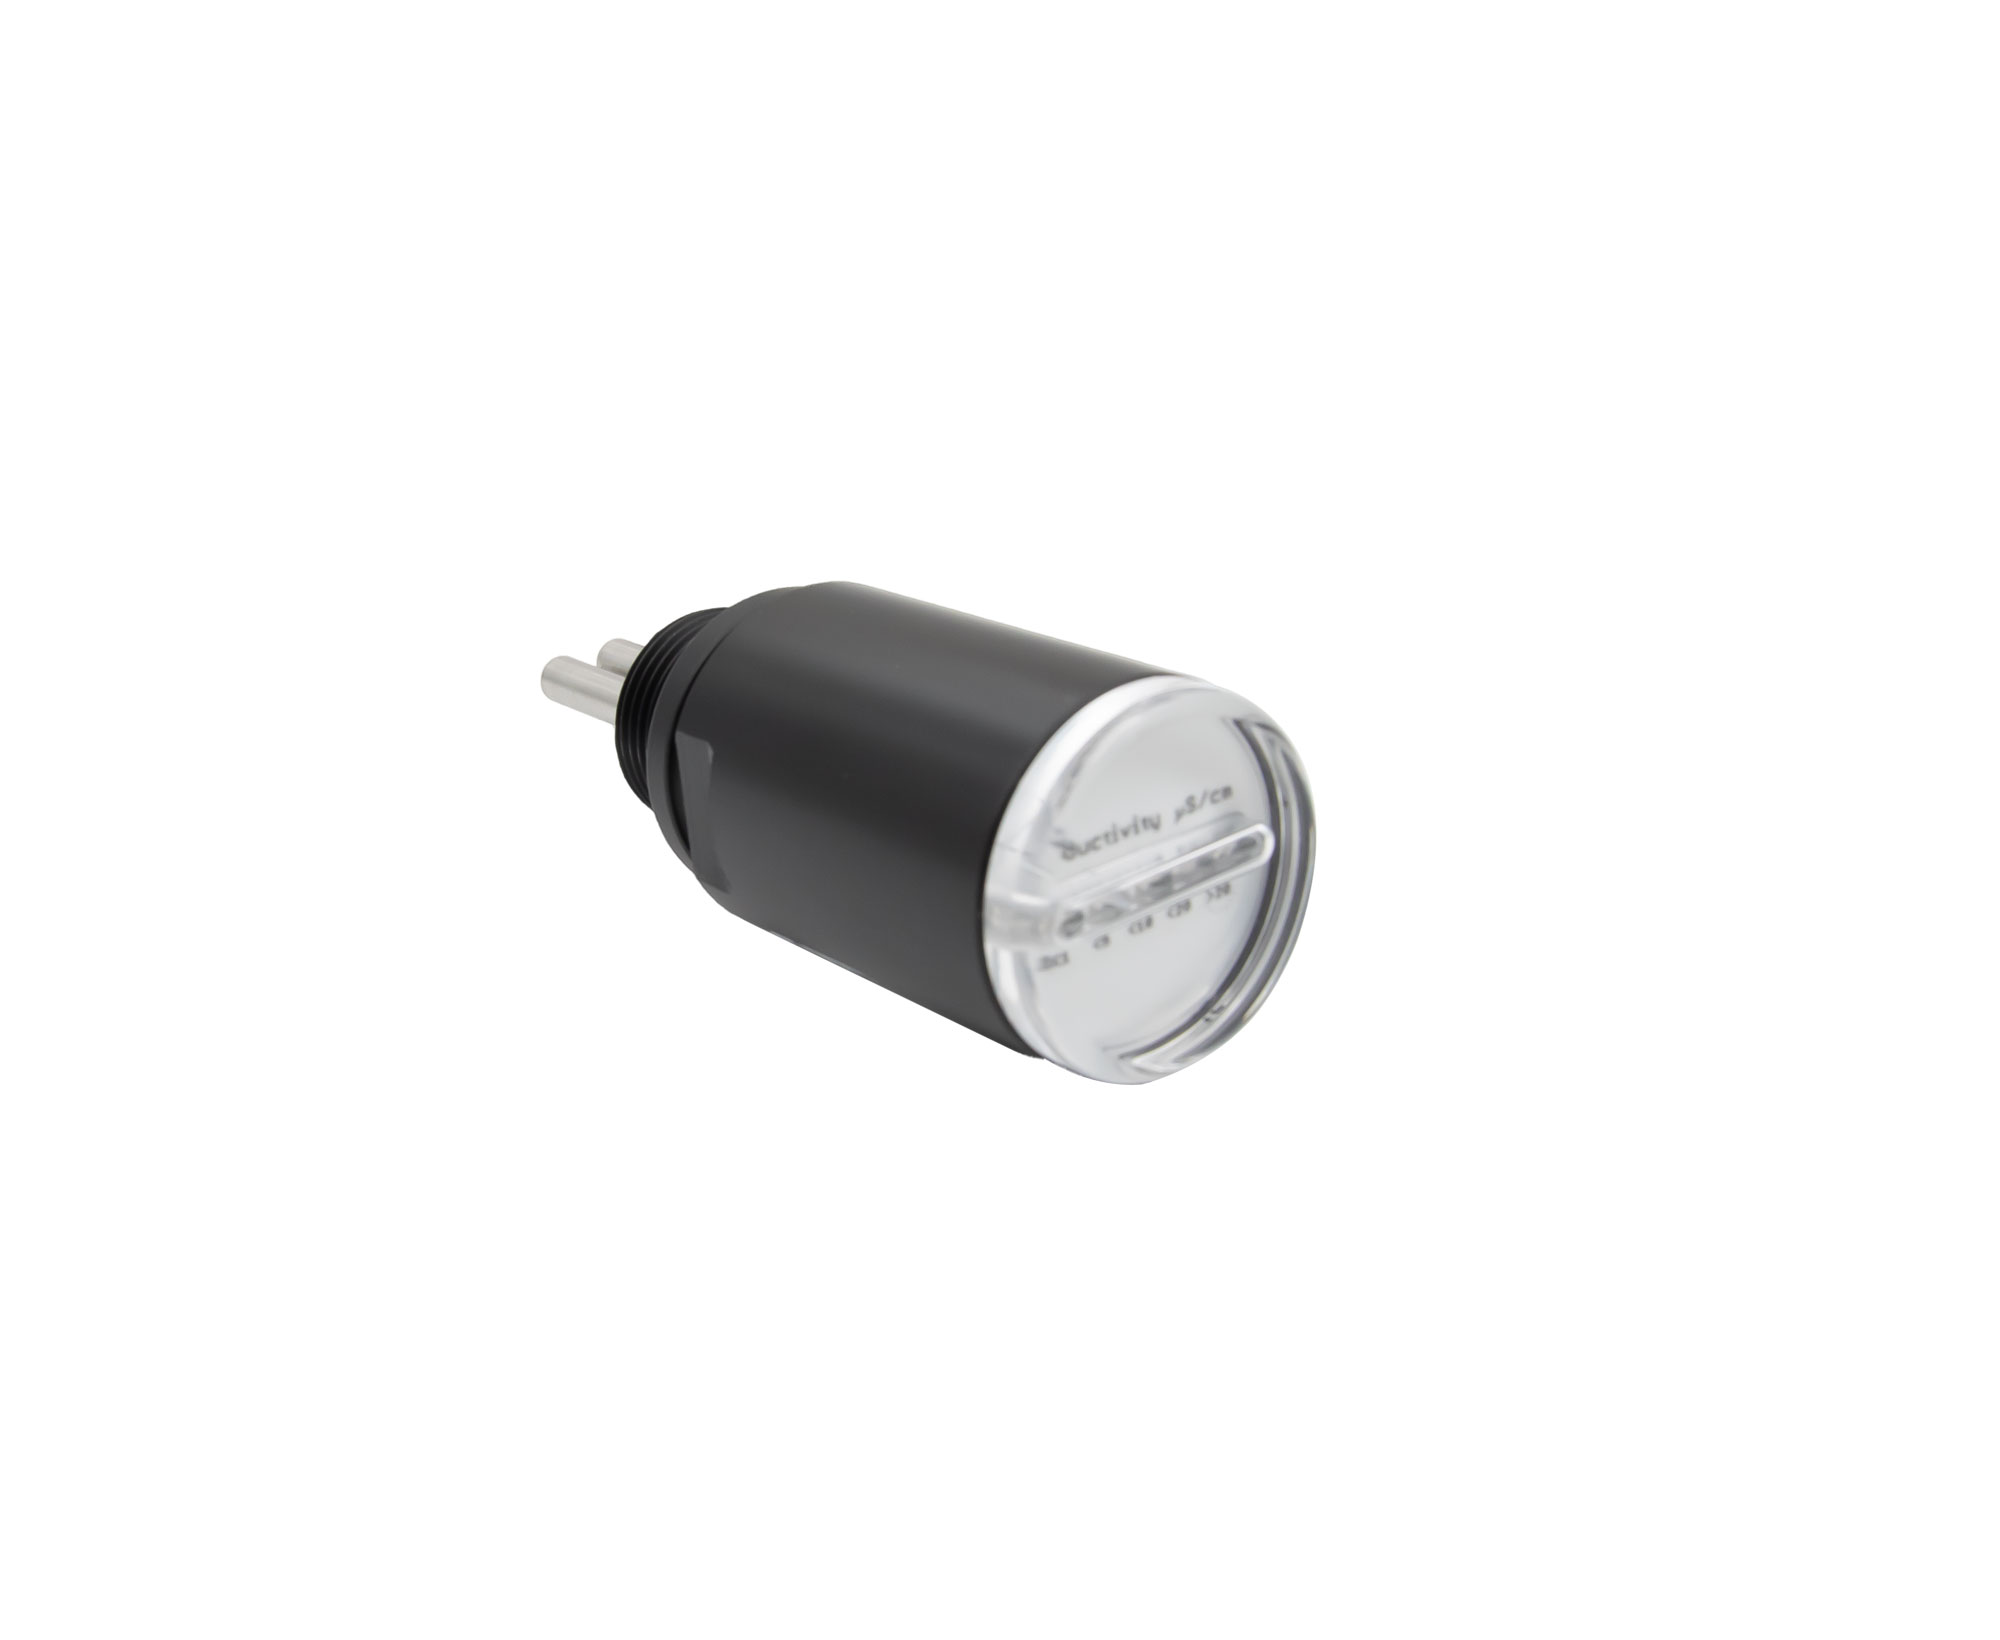 N-LED20, Leitfähigkeitsmessgerät 0-20 μS/cm mit 5 LEDs und integrierter 3/4' Einschraubmesszelle